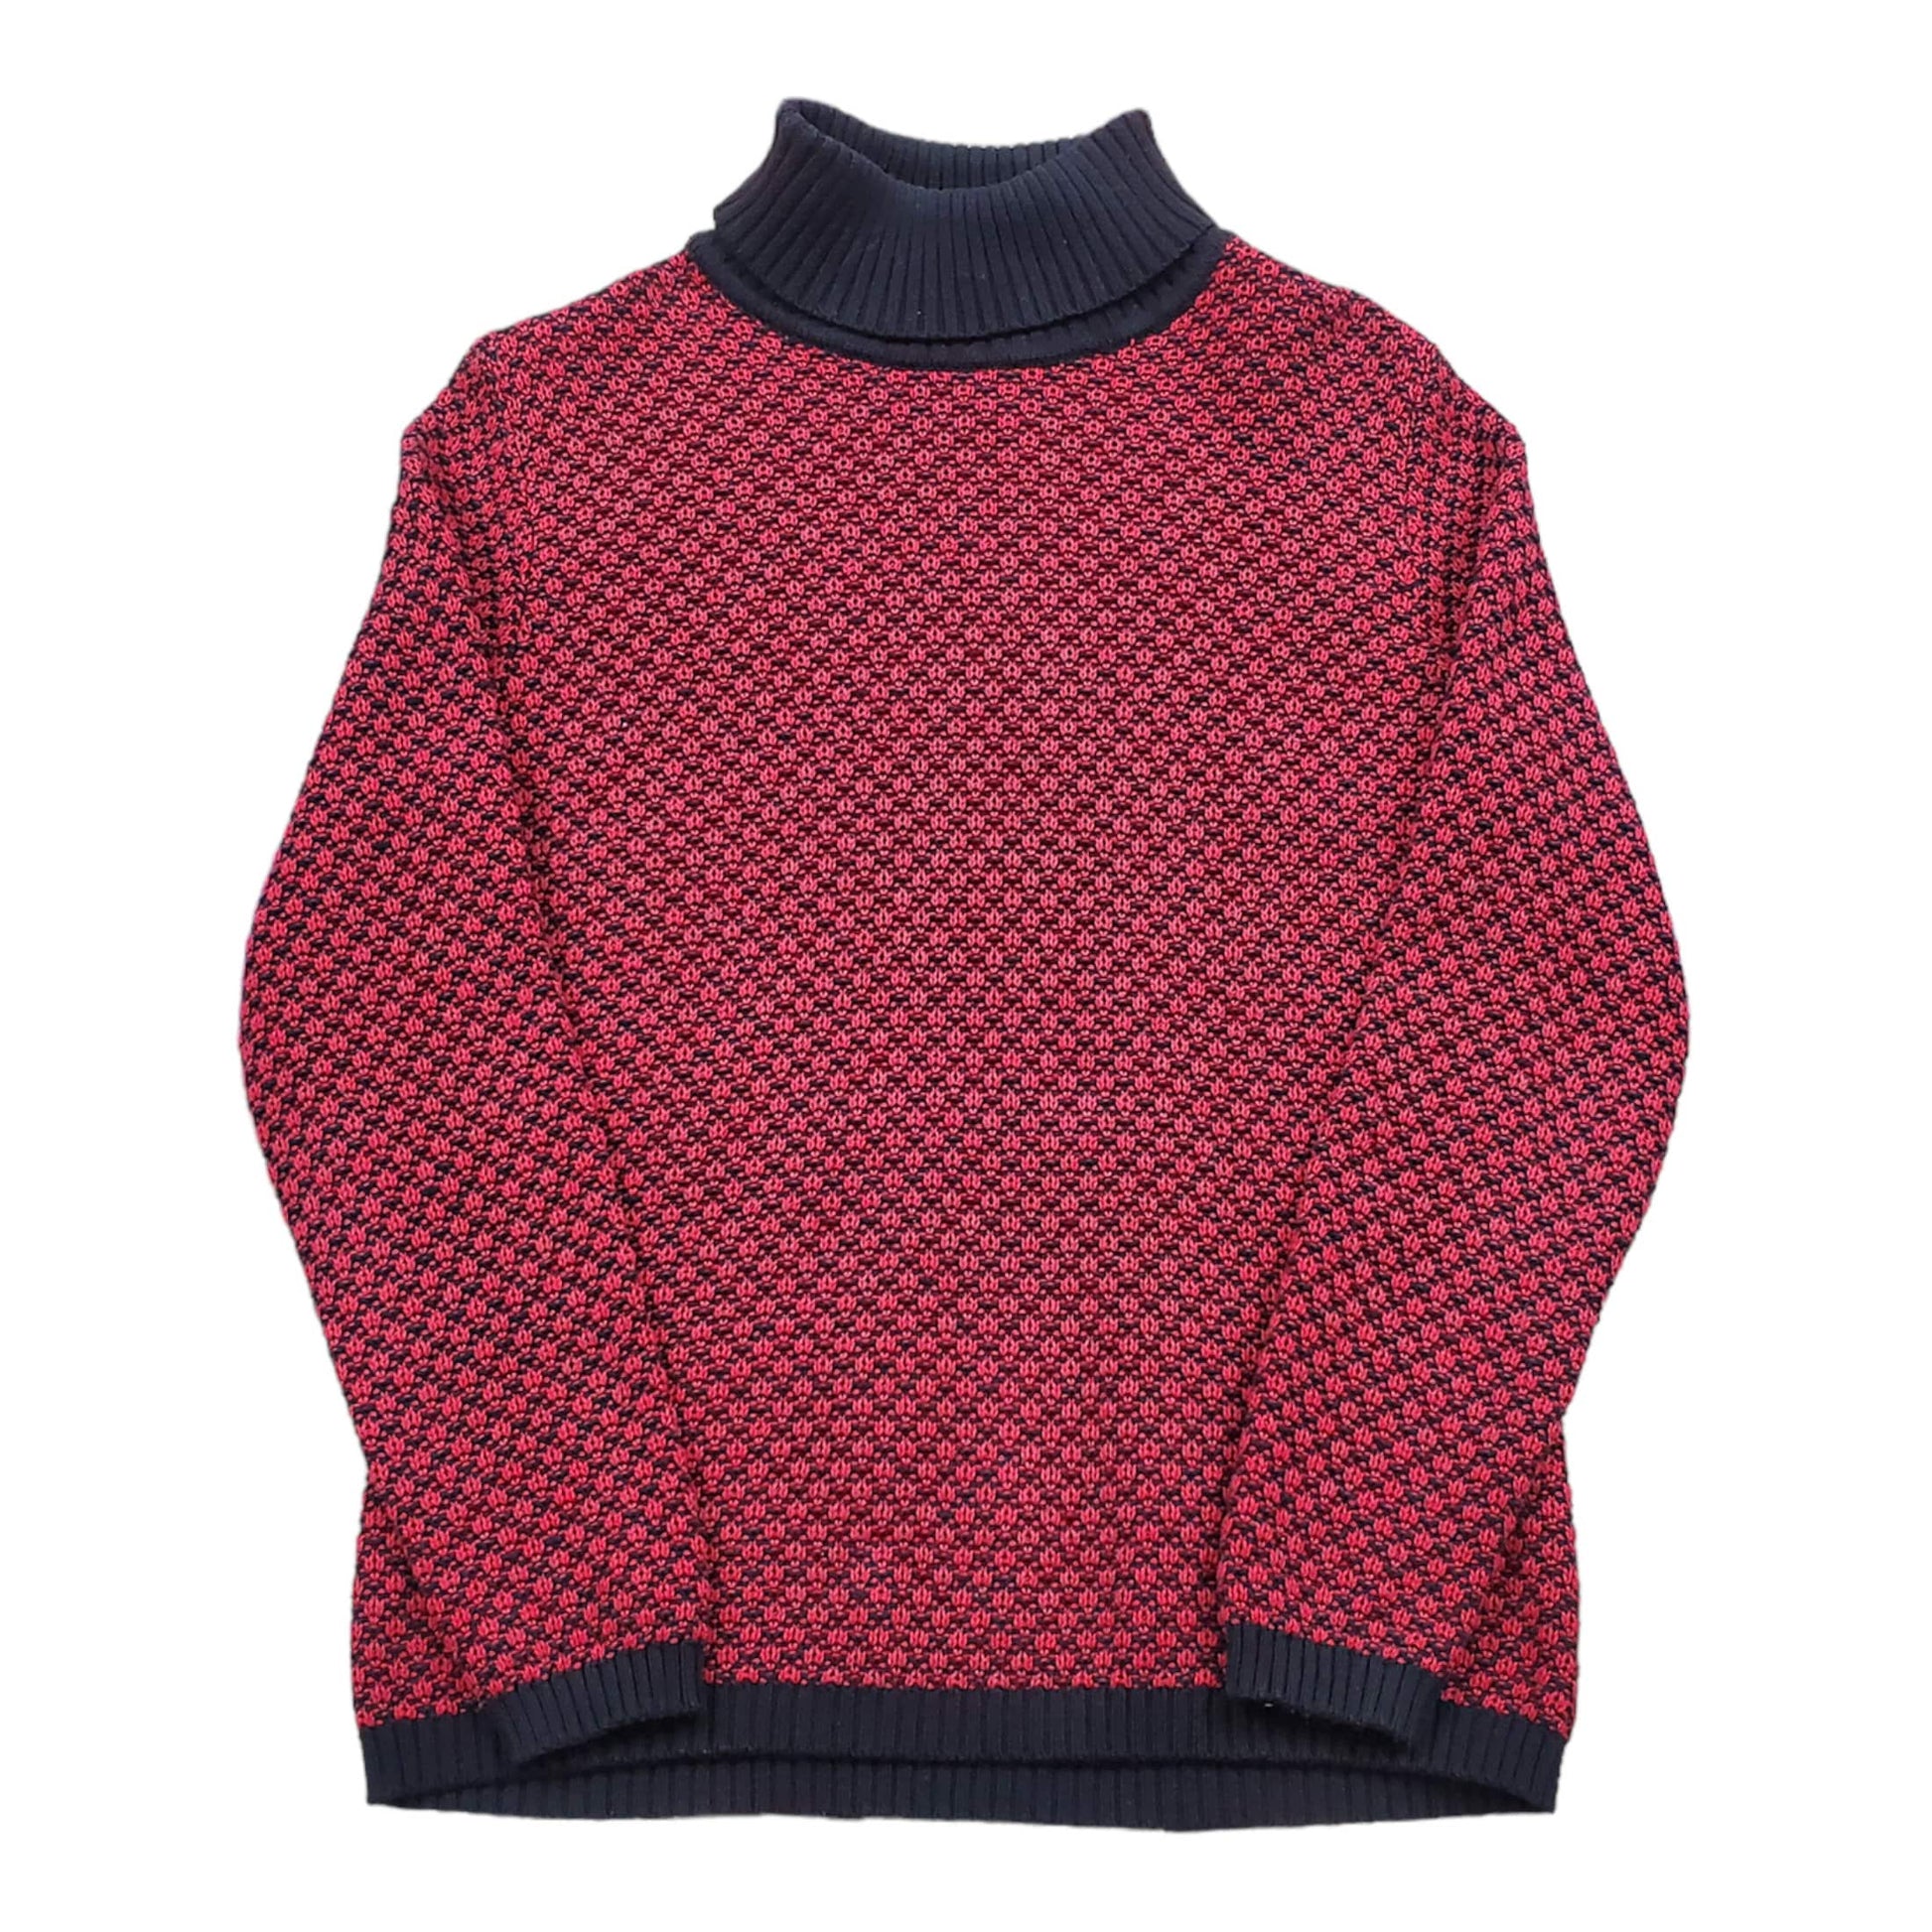 1990s/2000s Karen Scott Turtleneck Cotton Knit Sweater Woman's Size M/L Men's Size S